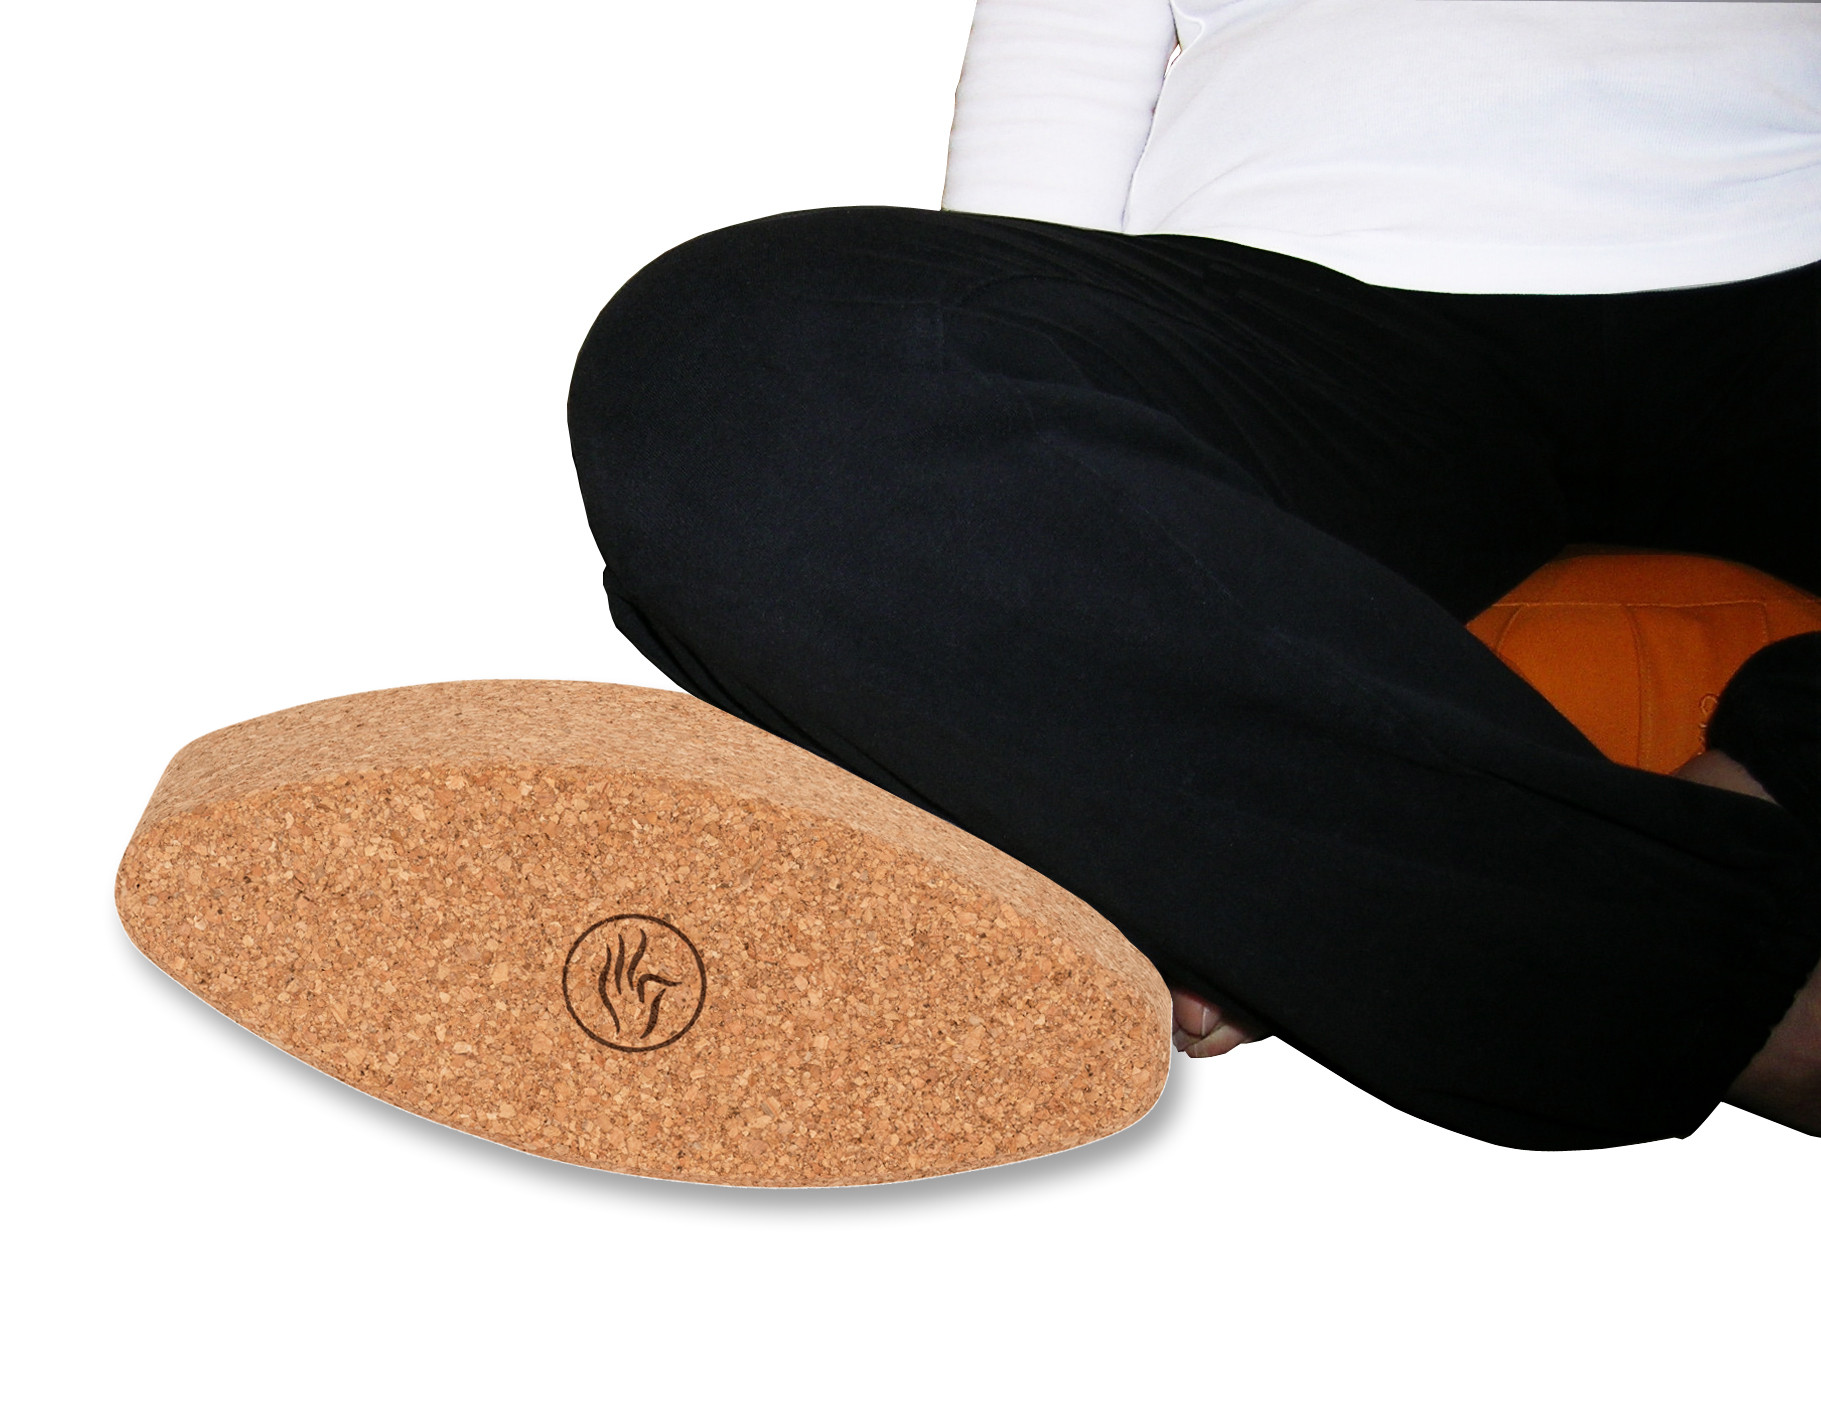 Brique de yoga liège ovale Egg 30.5cm x 12cm x 7.5cm